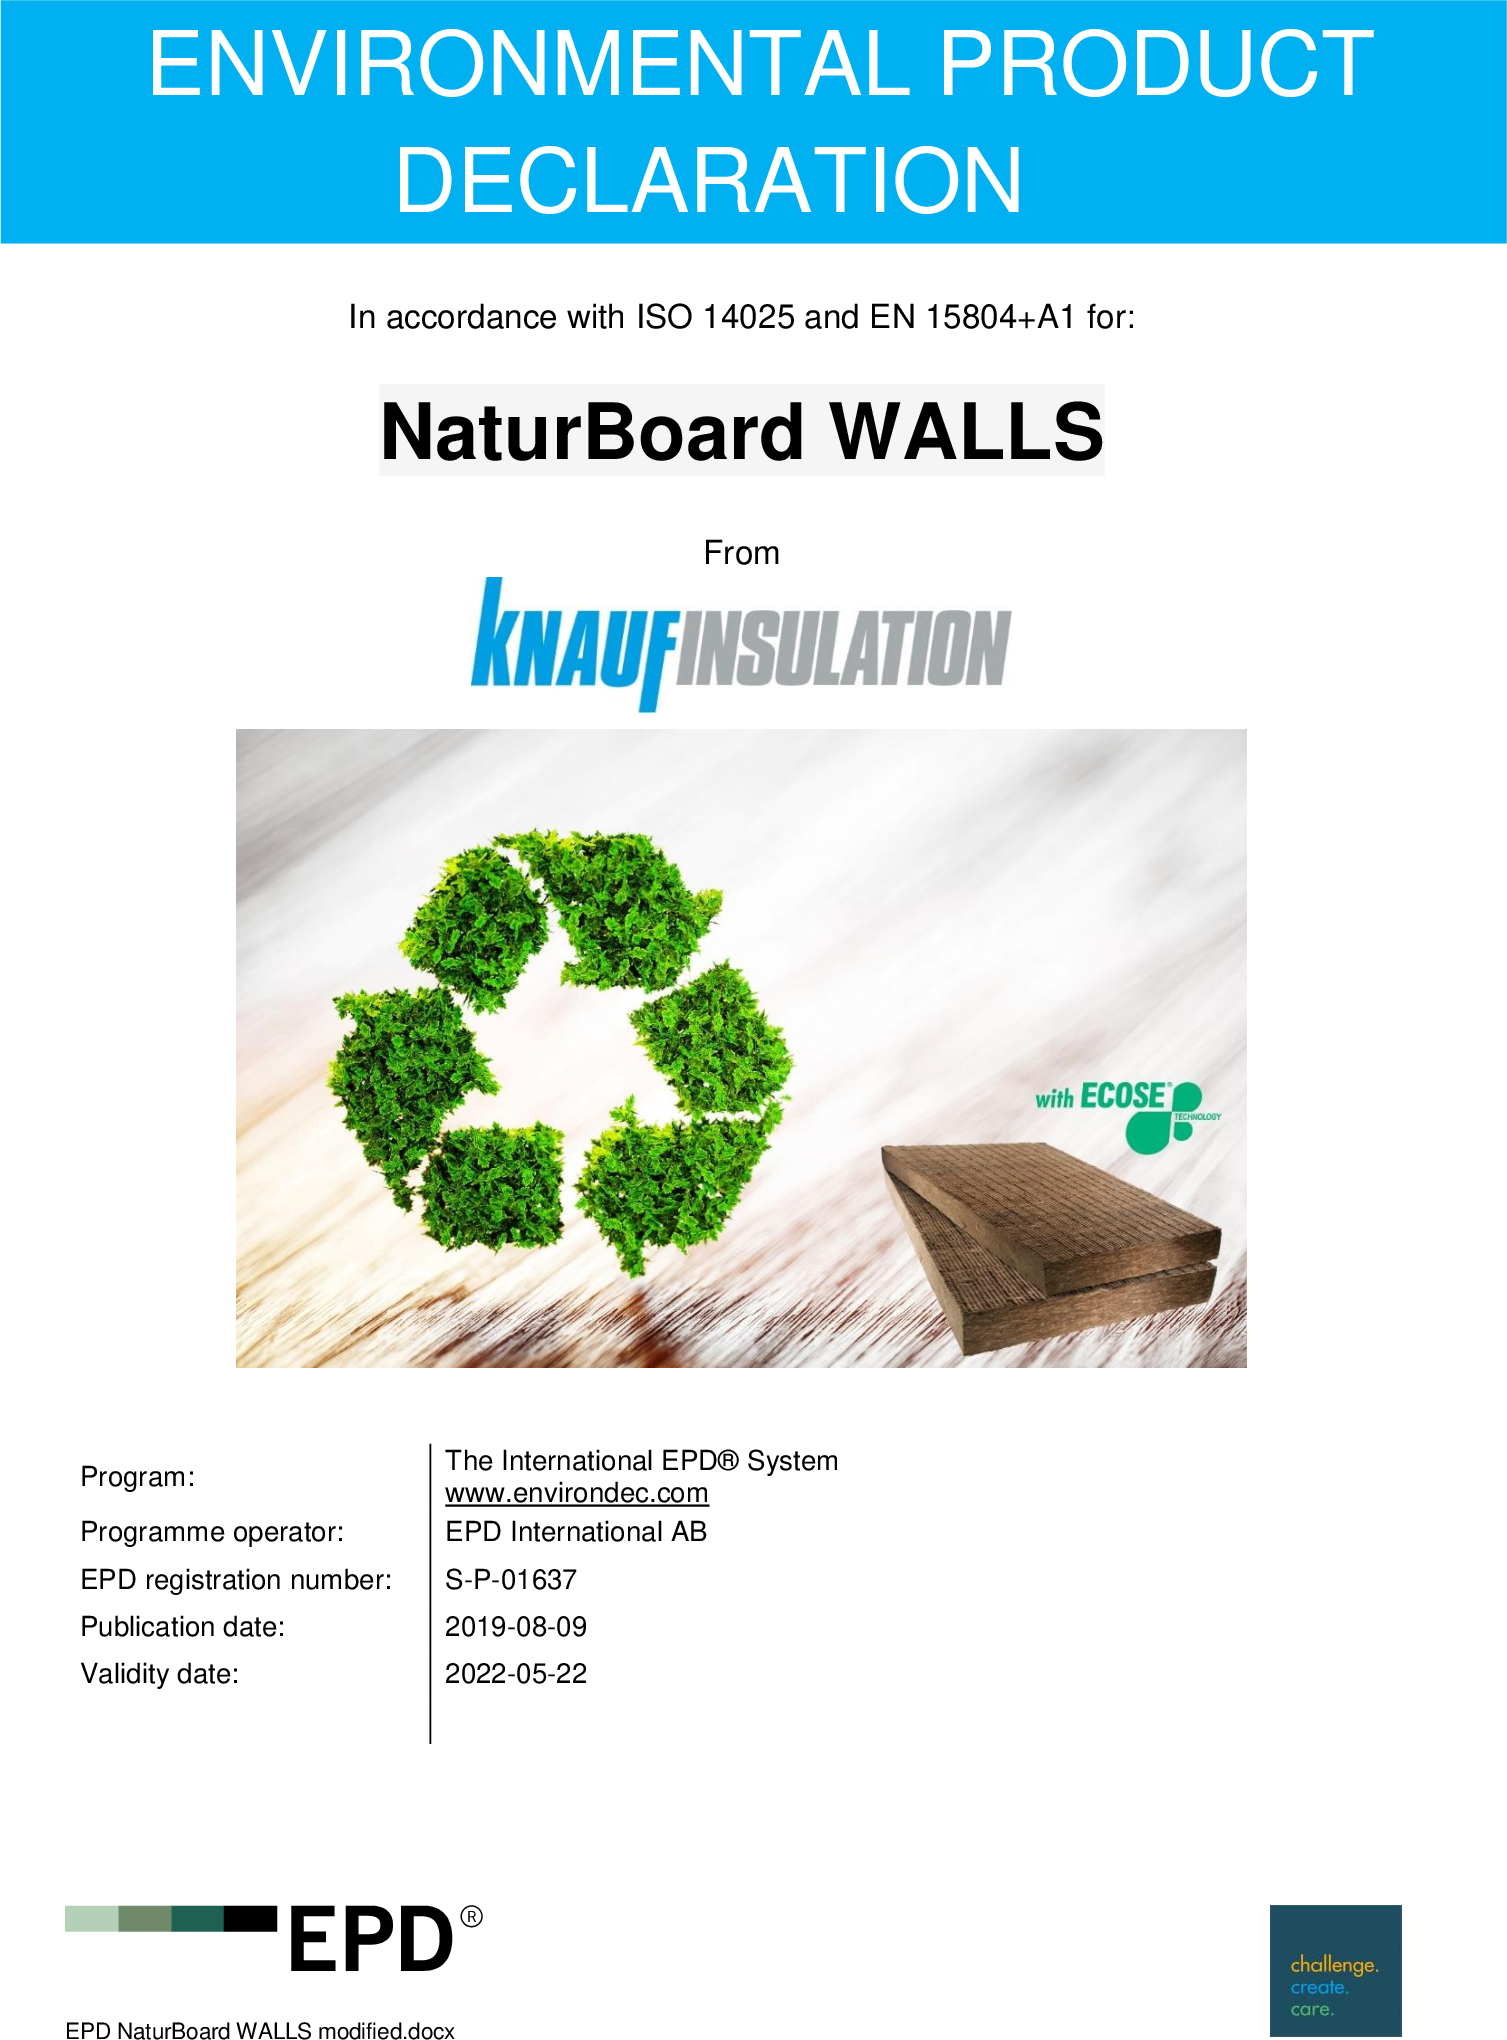 NaturBoard Walls